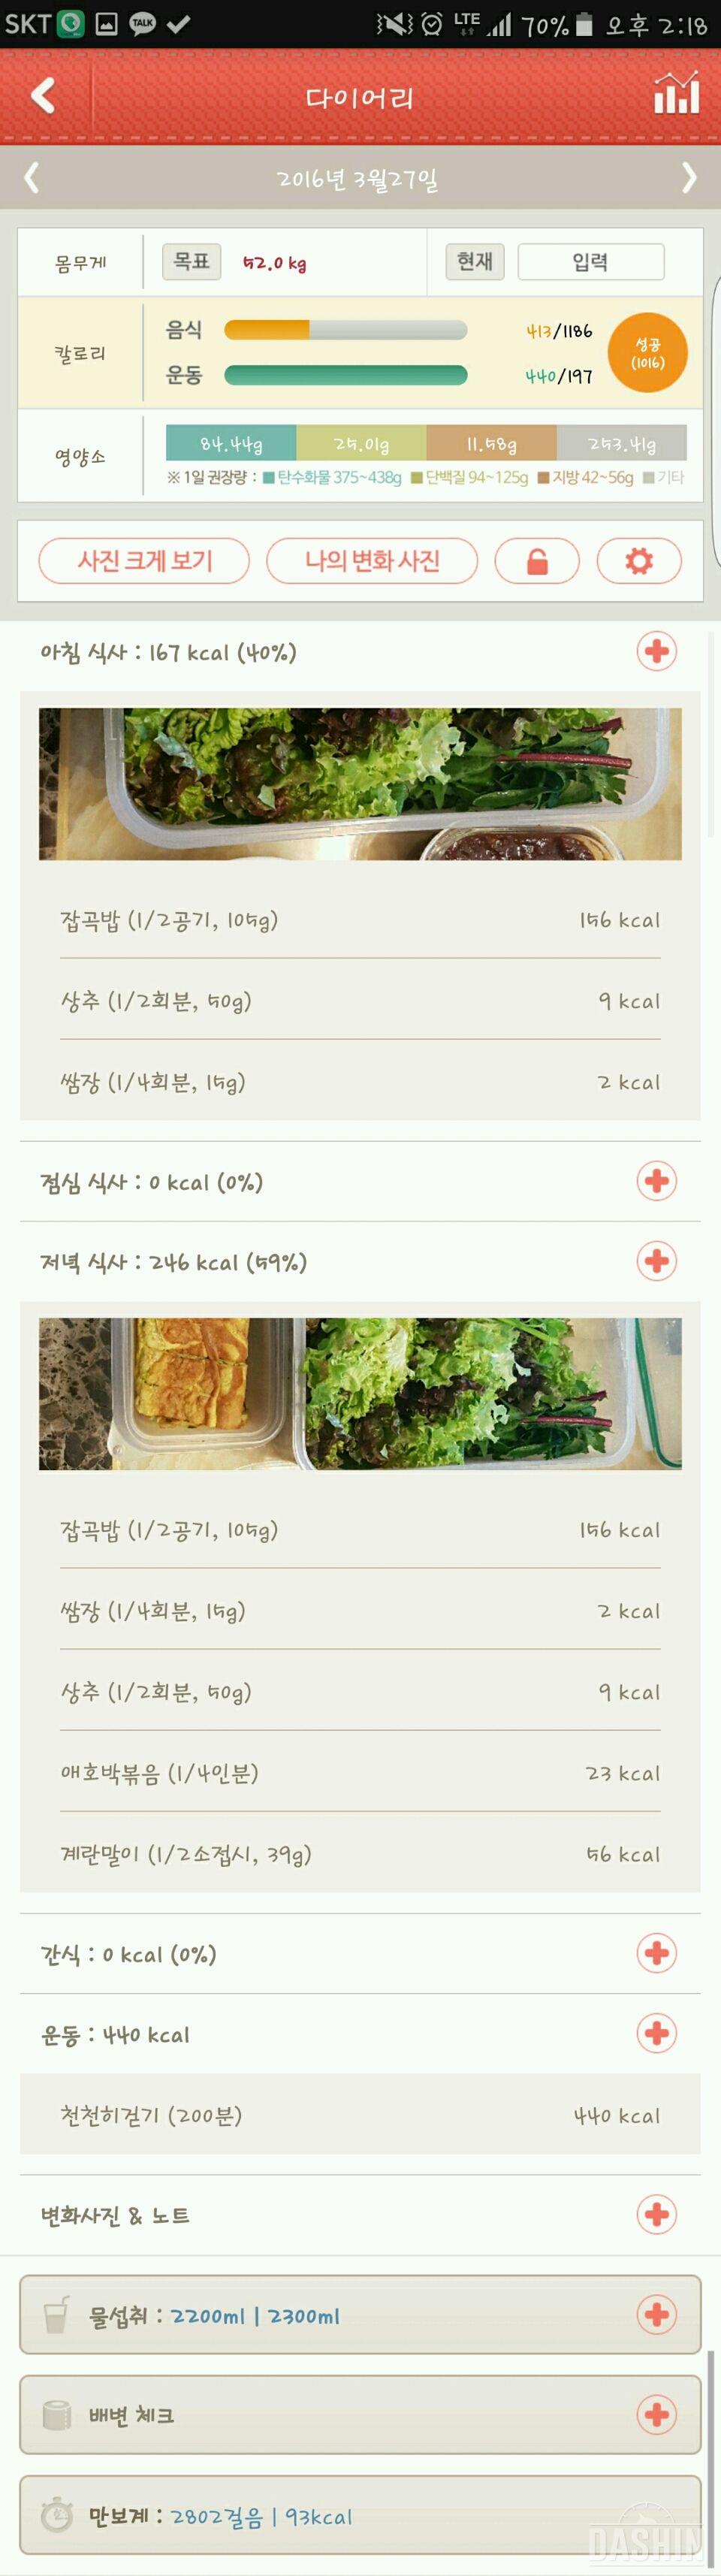 ♡30일 1,000kcal 식단♡ 쏭 도전 13일차 (13/30)